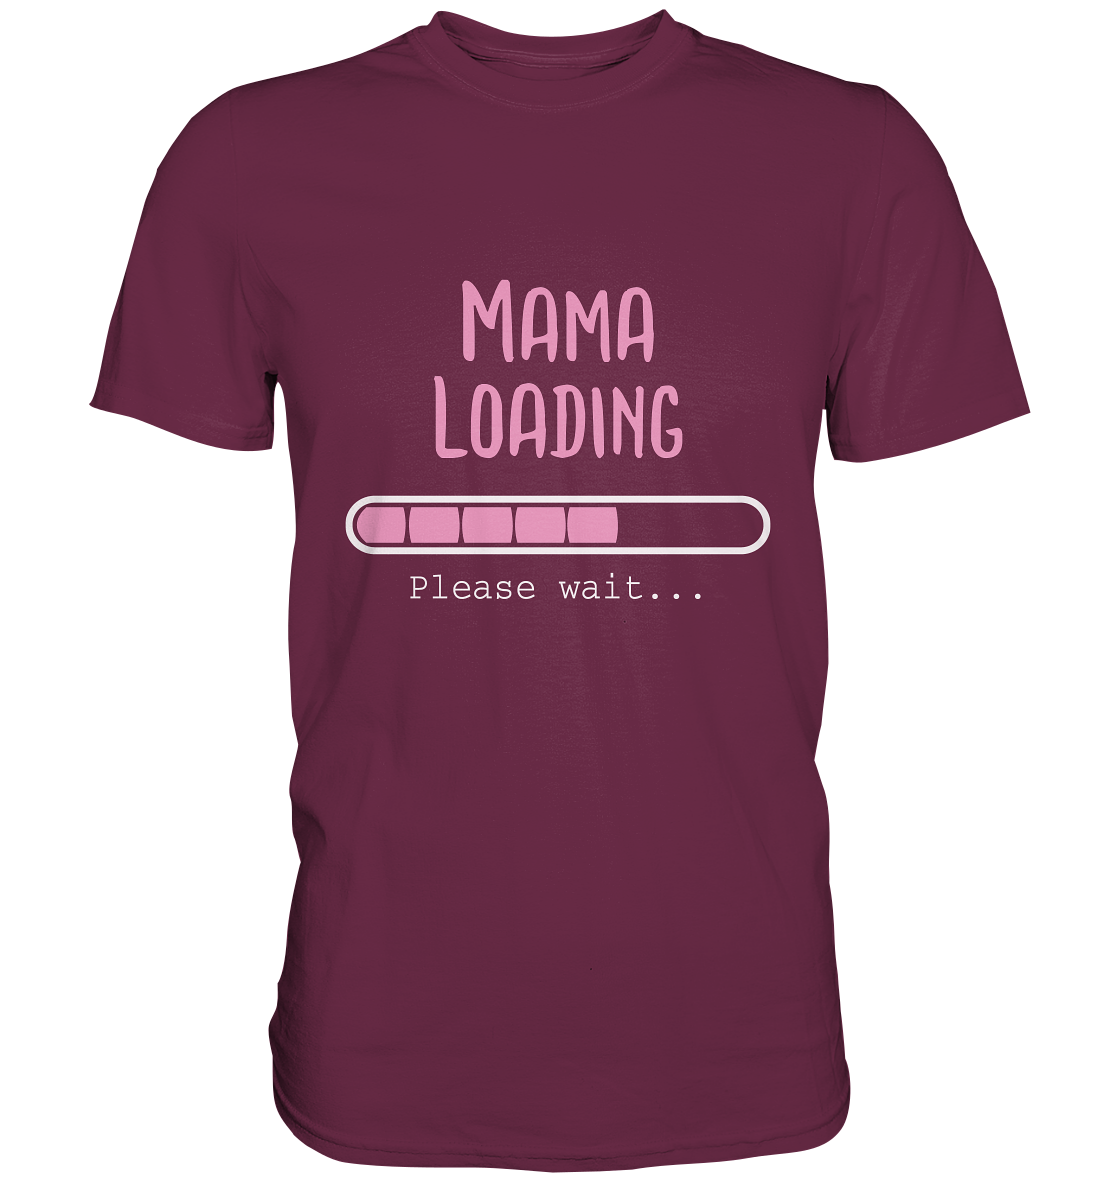 Mama loading. Please wait... - Unisex Premium Shirt